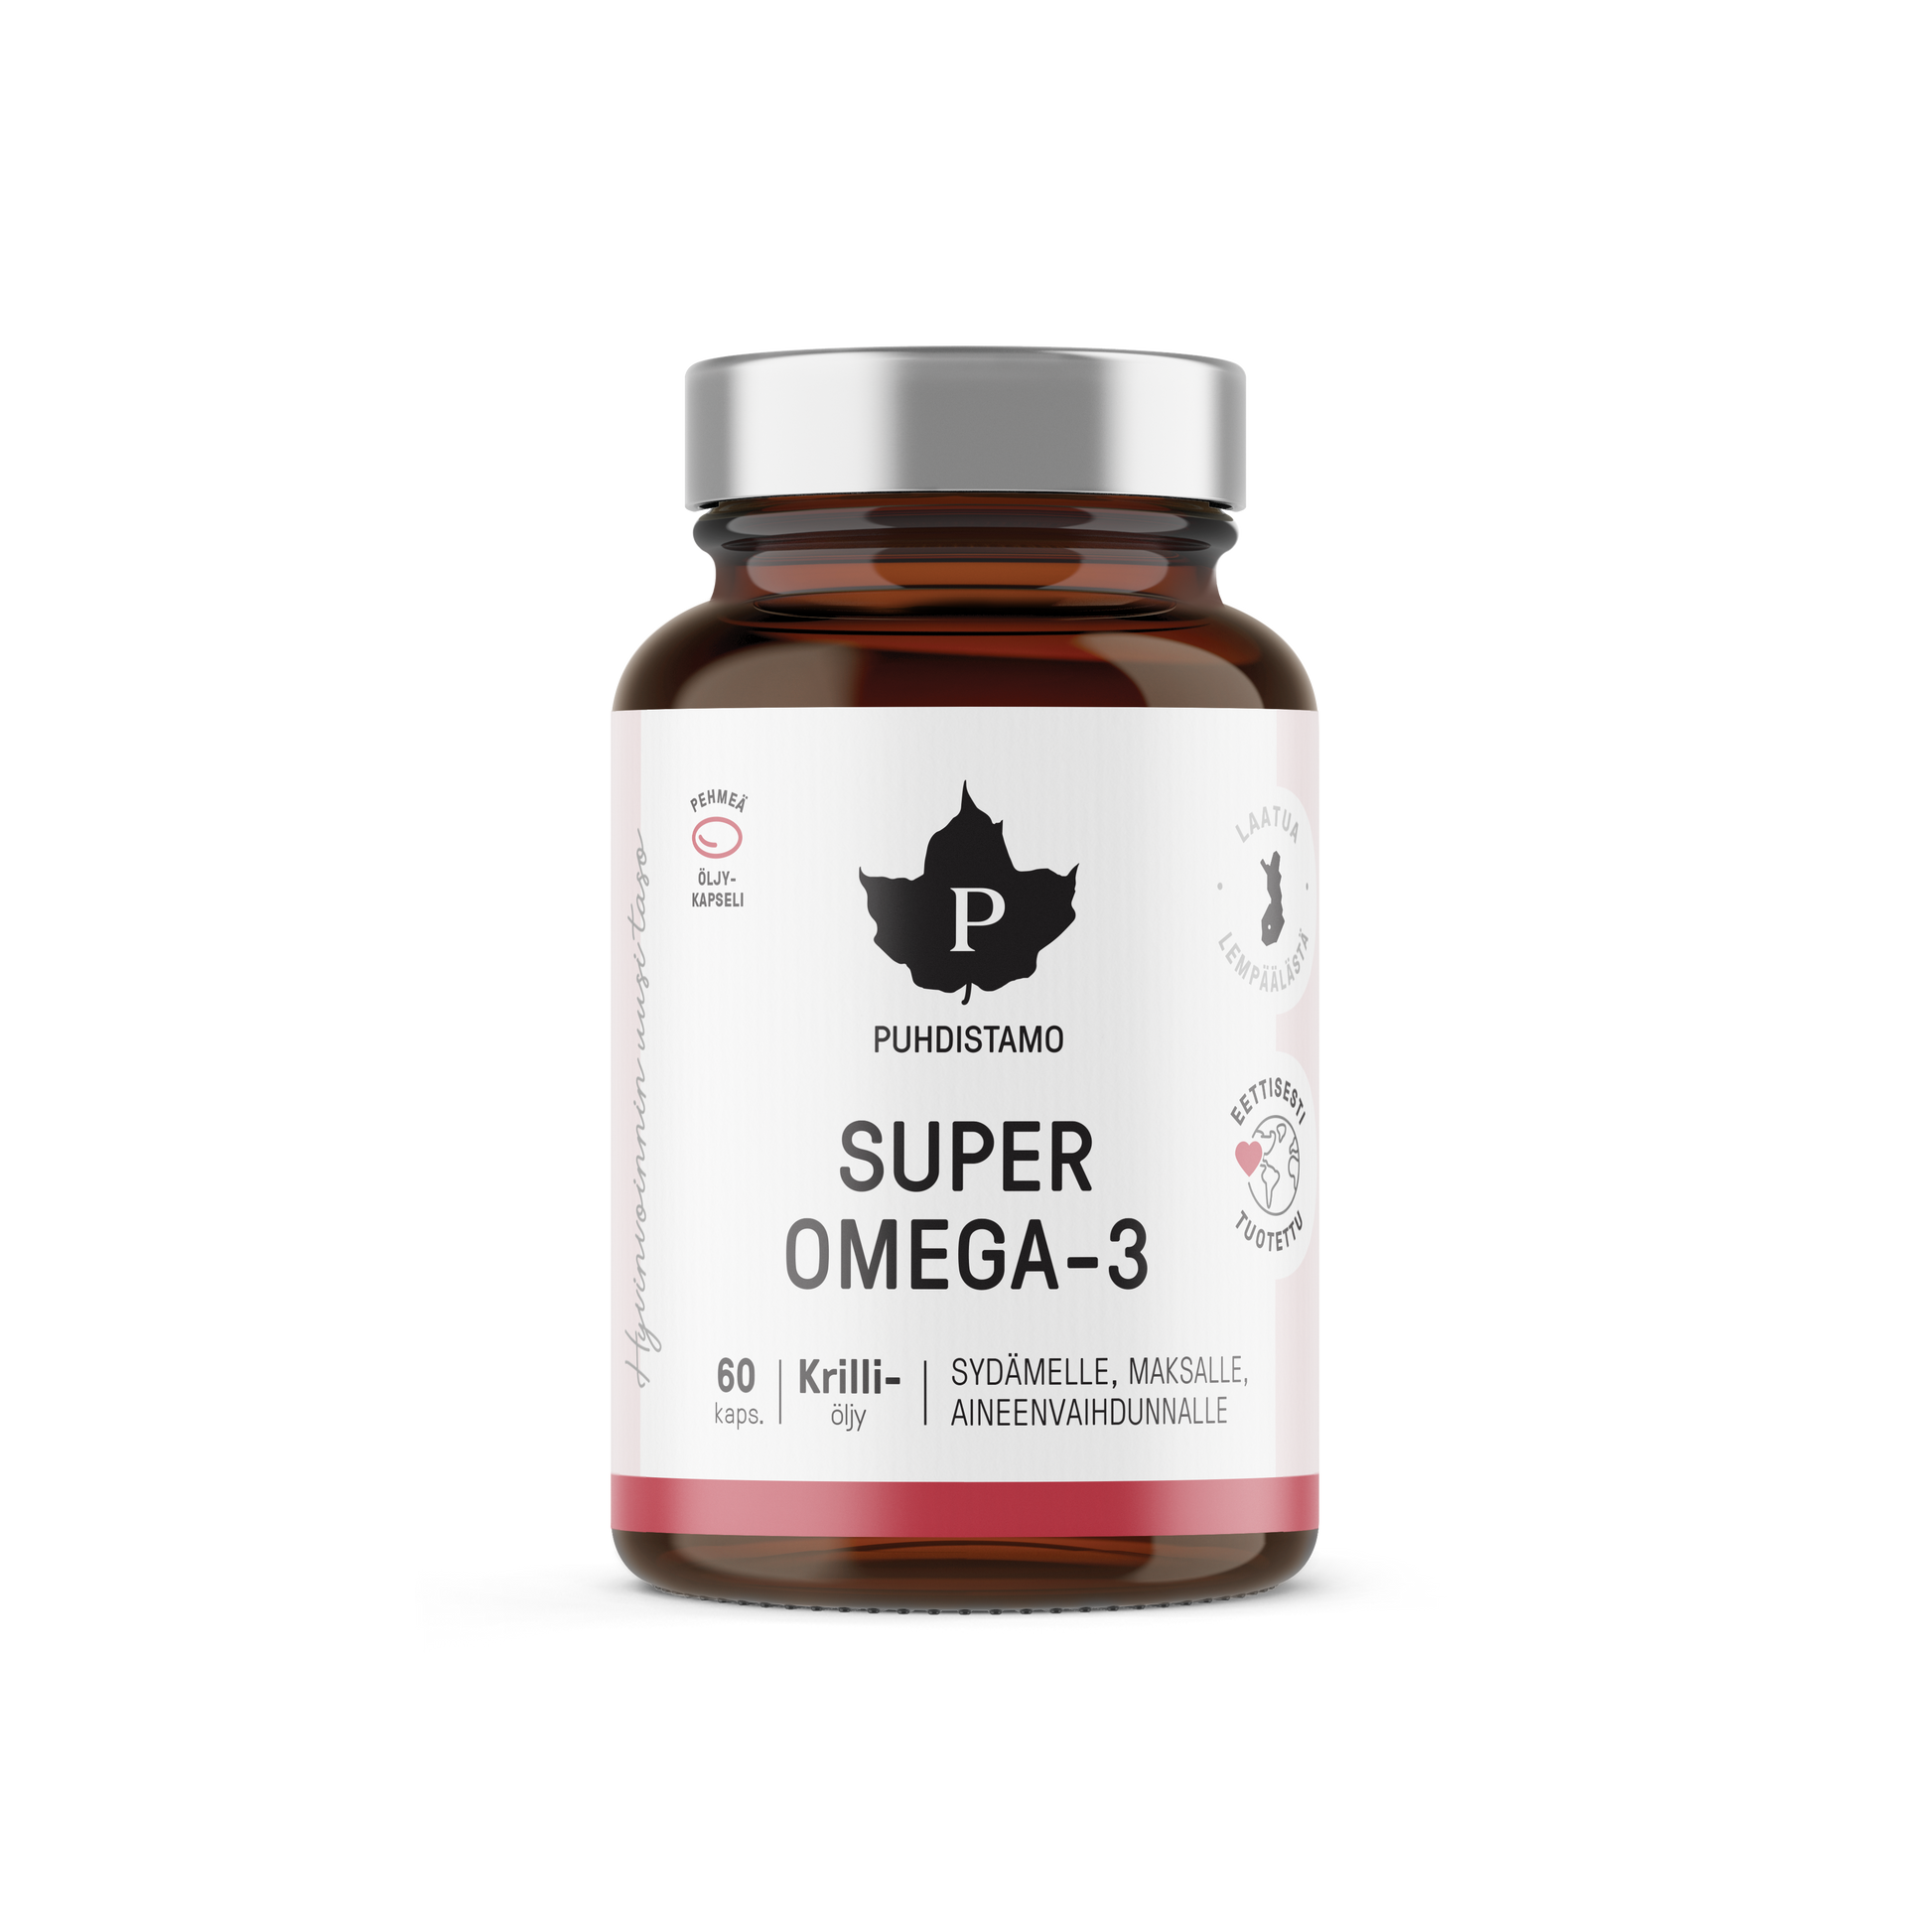 Puhdistamo Super Omega-3 60 kapselia - w2w terveys ja hyvinvointi